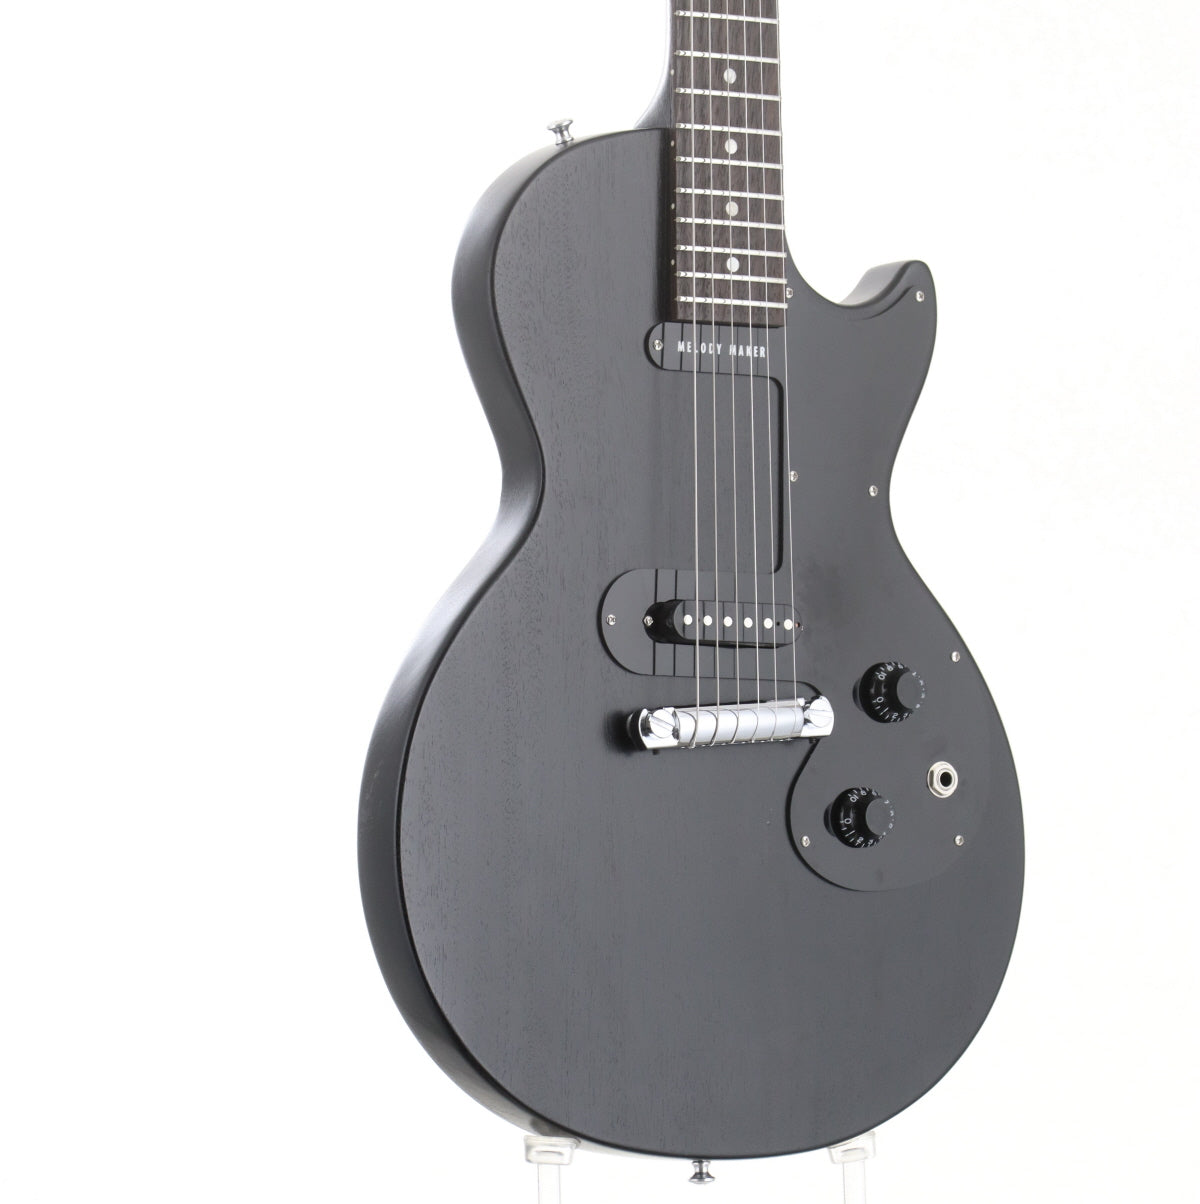 [SN 006780396] USED Gibson / Melody Maker Satin Ebony 2008 [06]